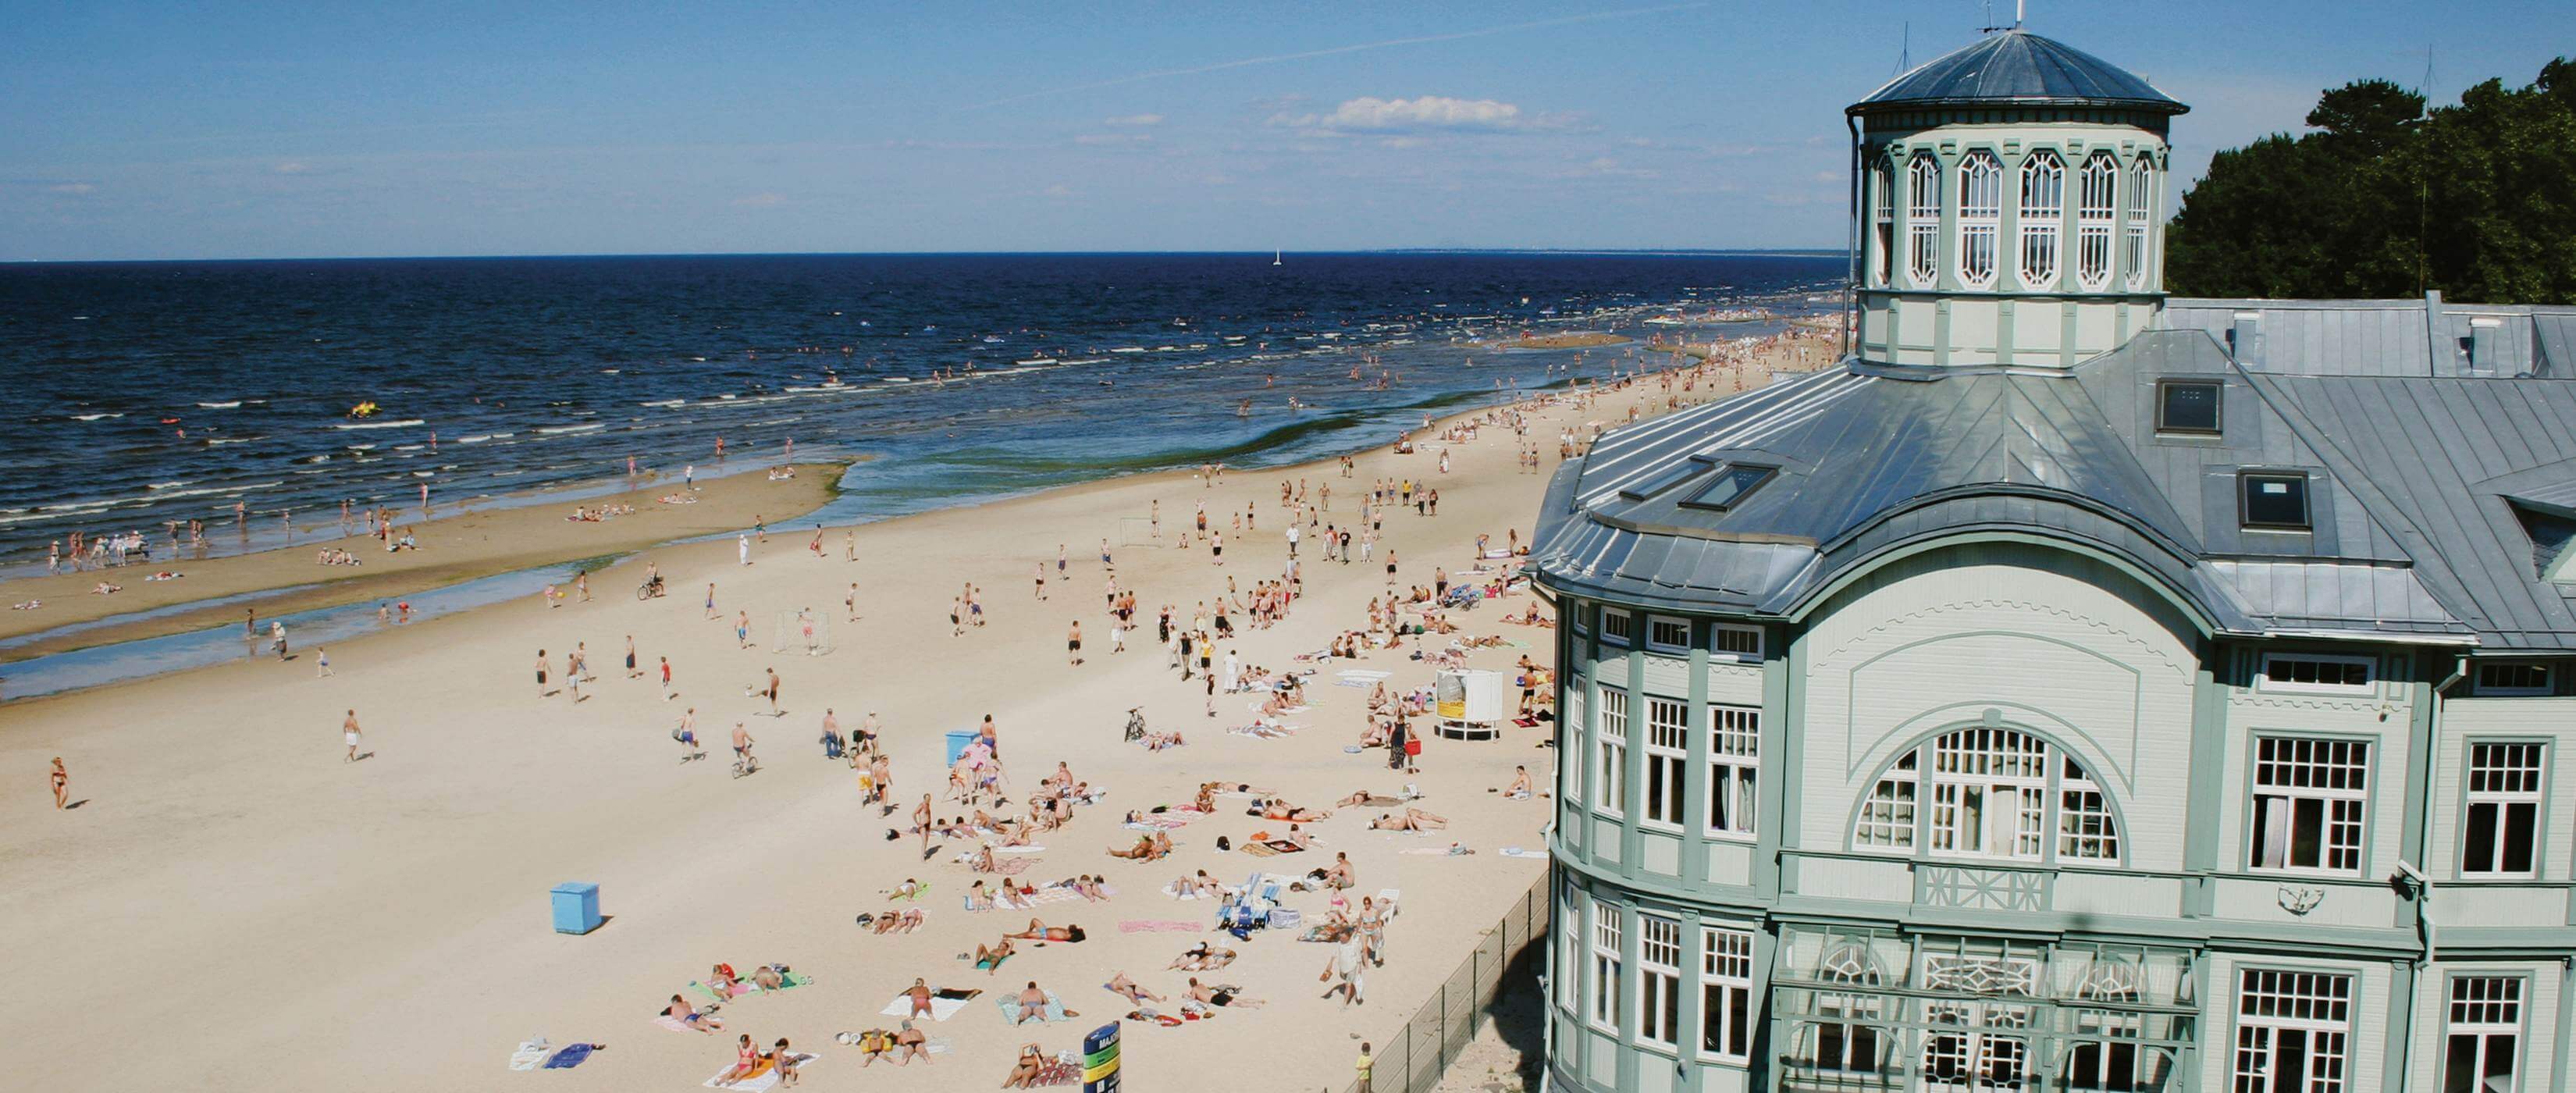 Foto: Bderarchitektur und Badeleben am Strand von Riga - Bildrechte latvia.travel - Lupe Reisen